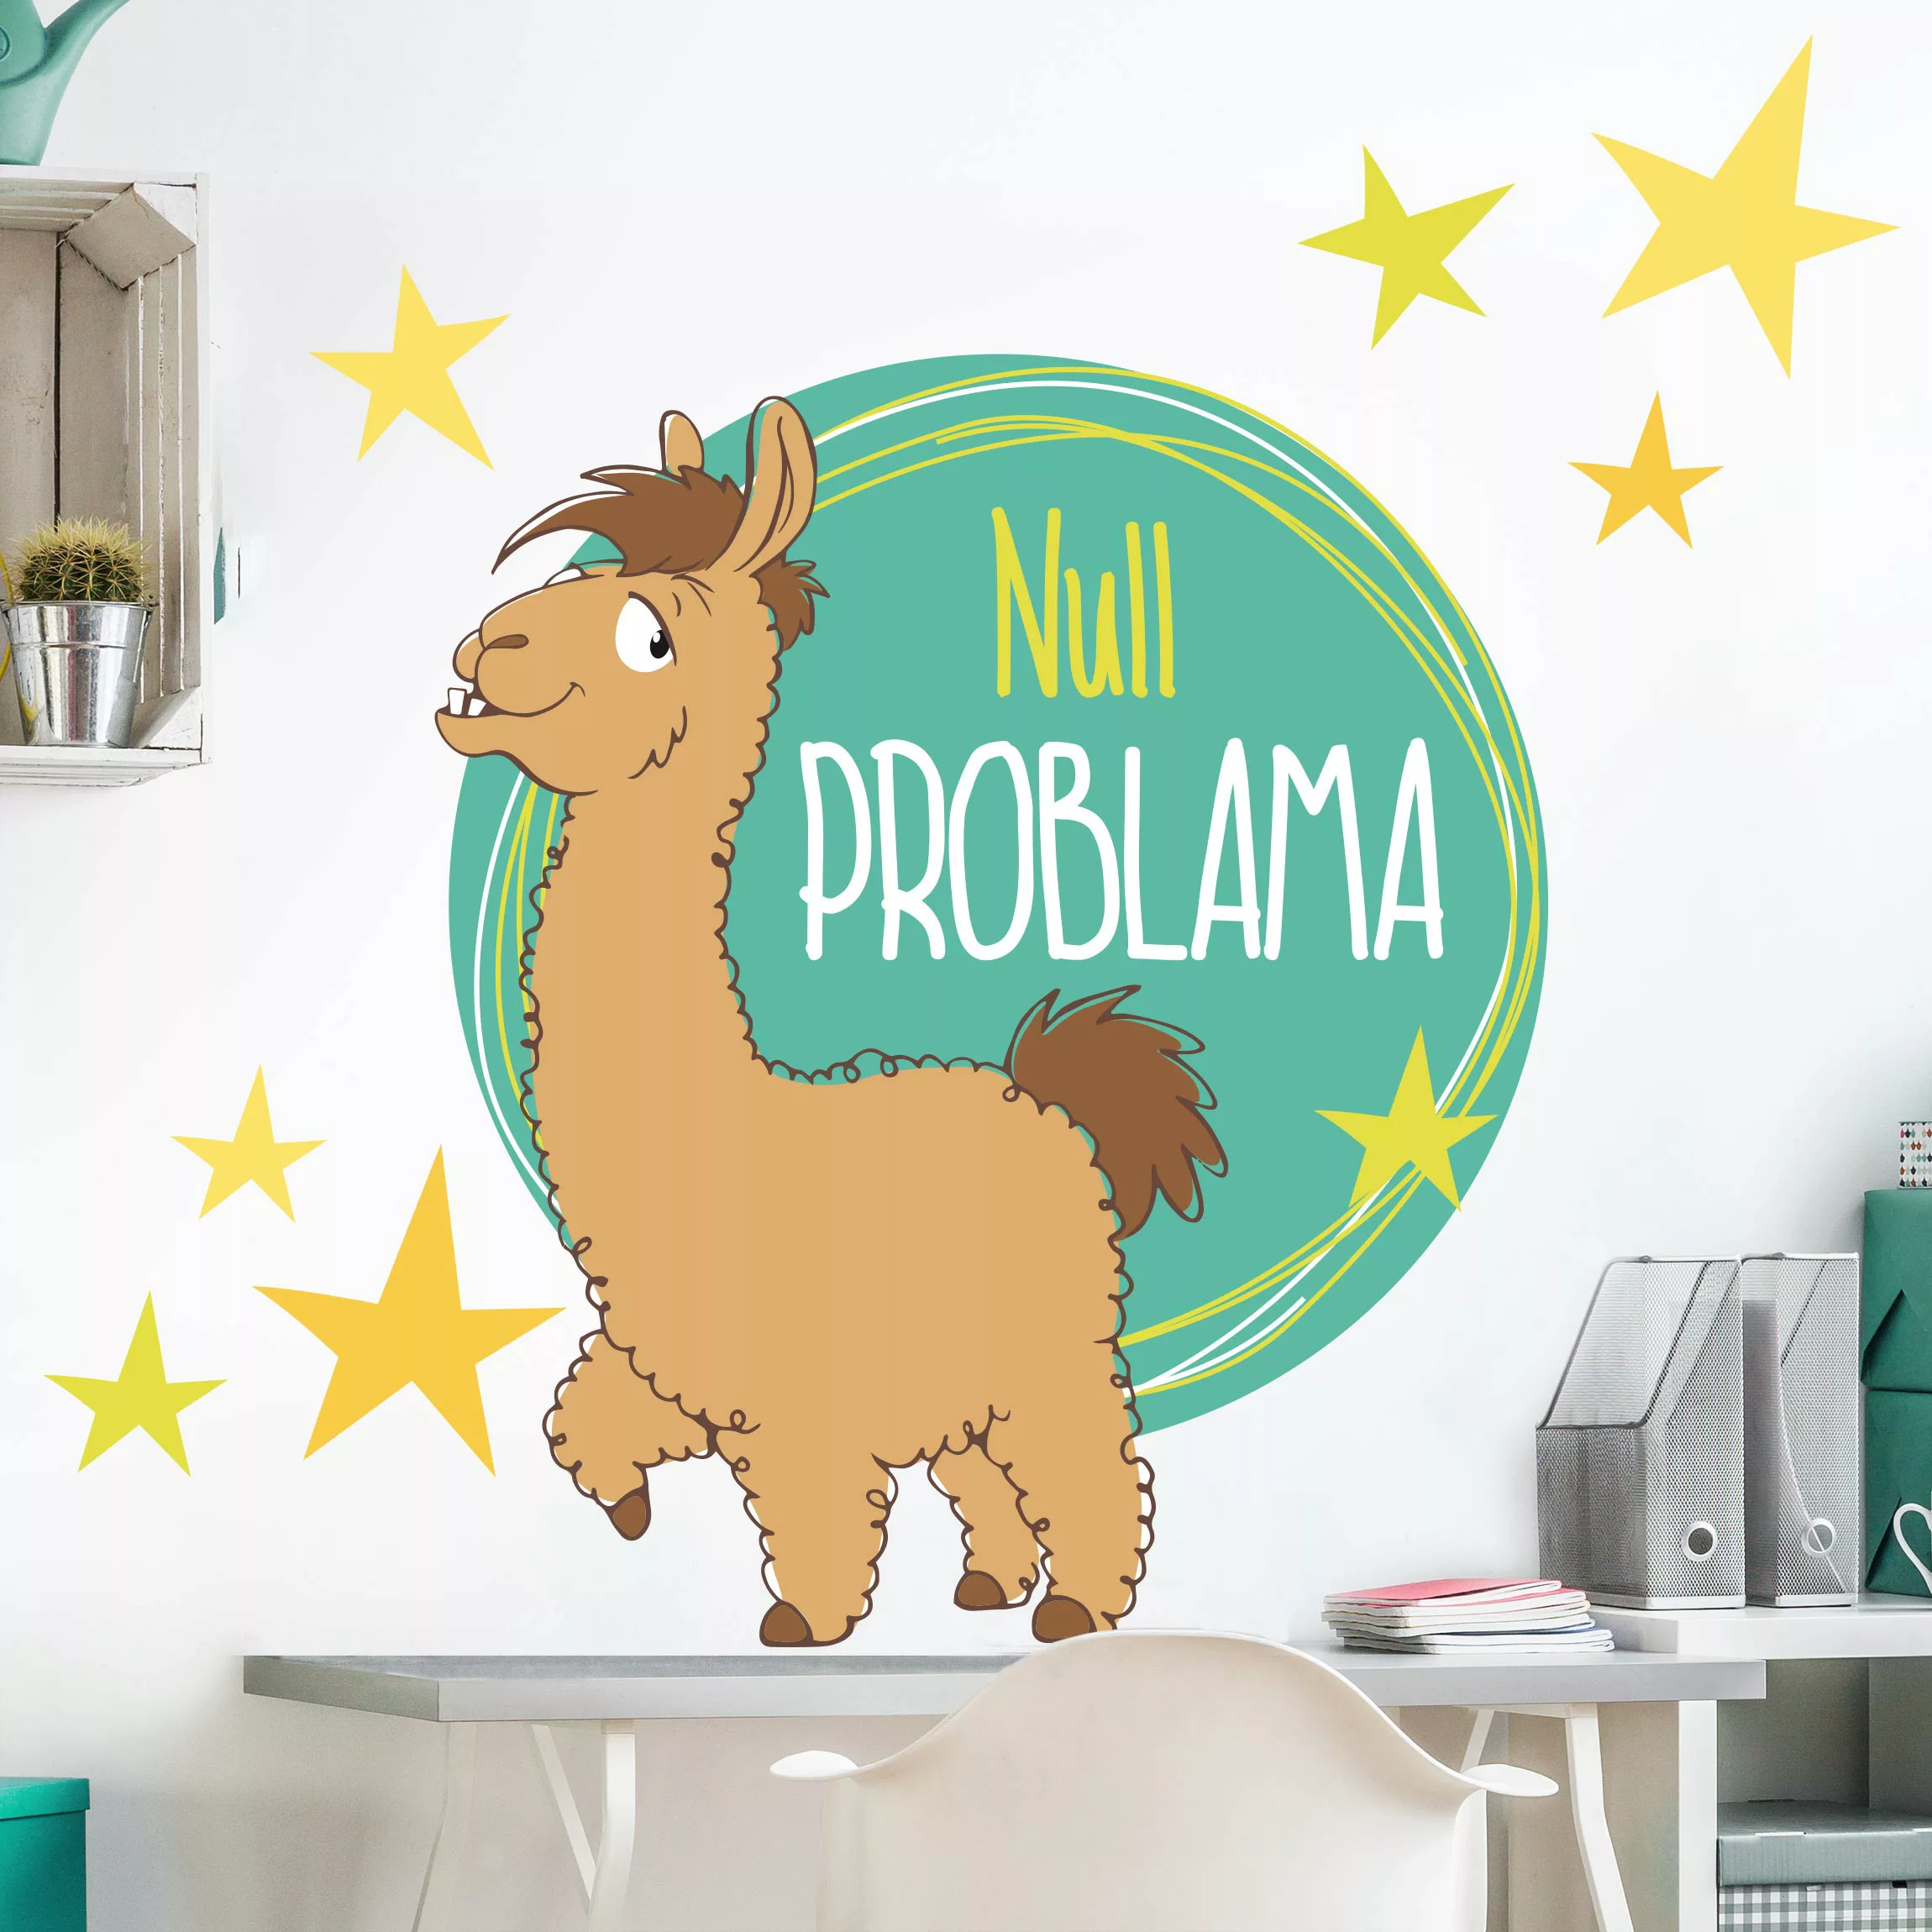 Wandtattoo Kinderzimmer NICI - Null Problama günstig online kaufen